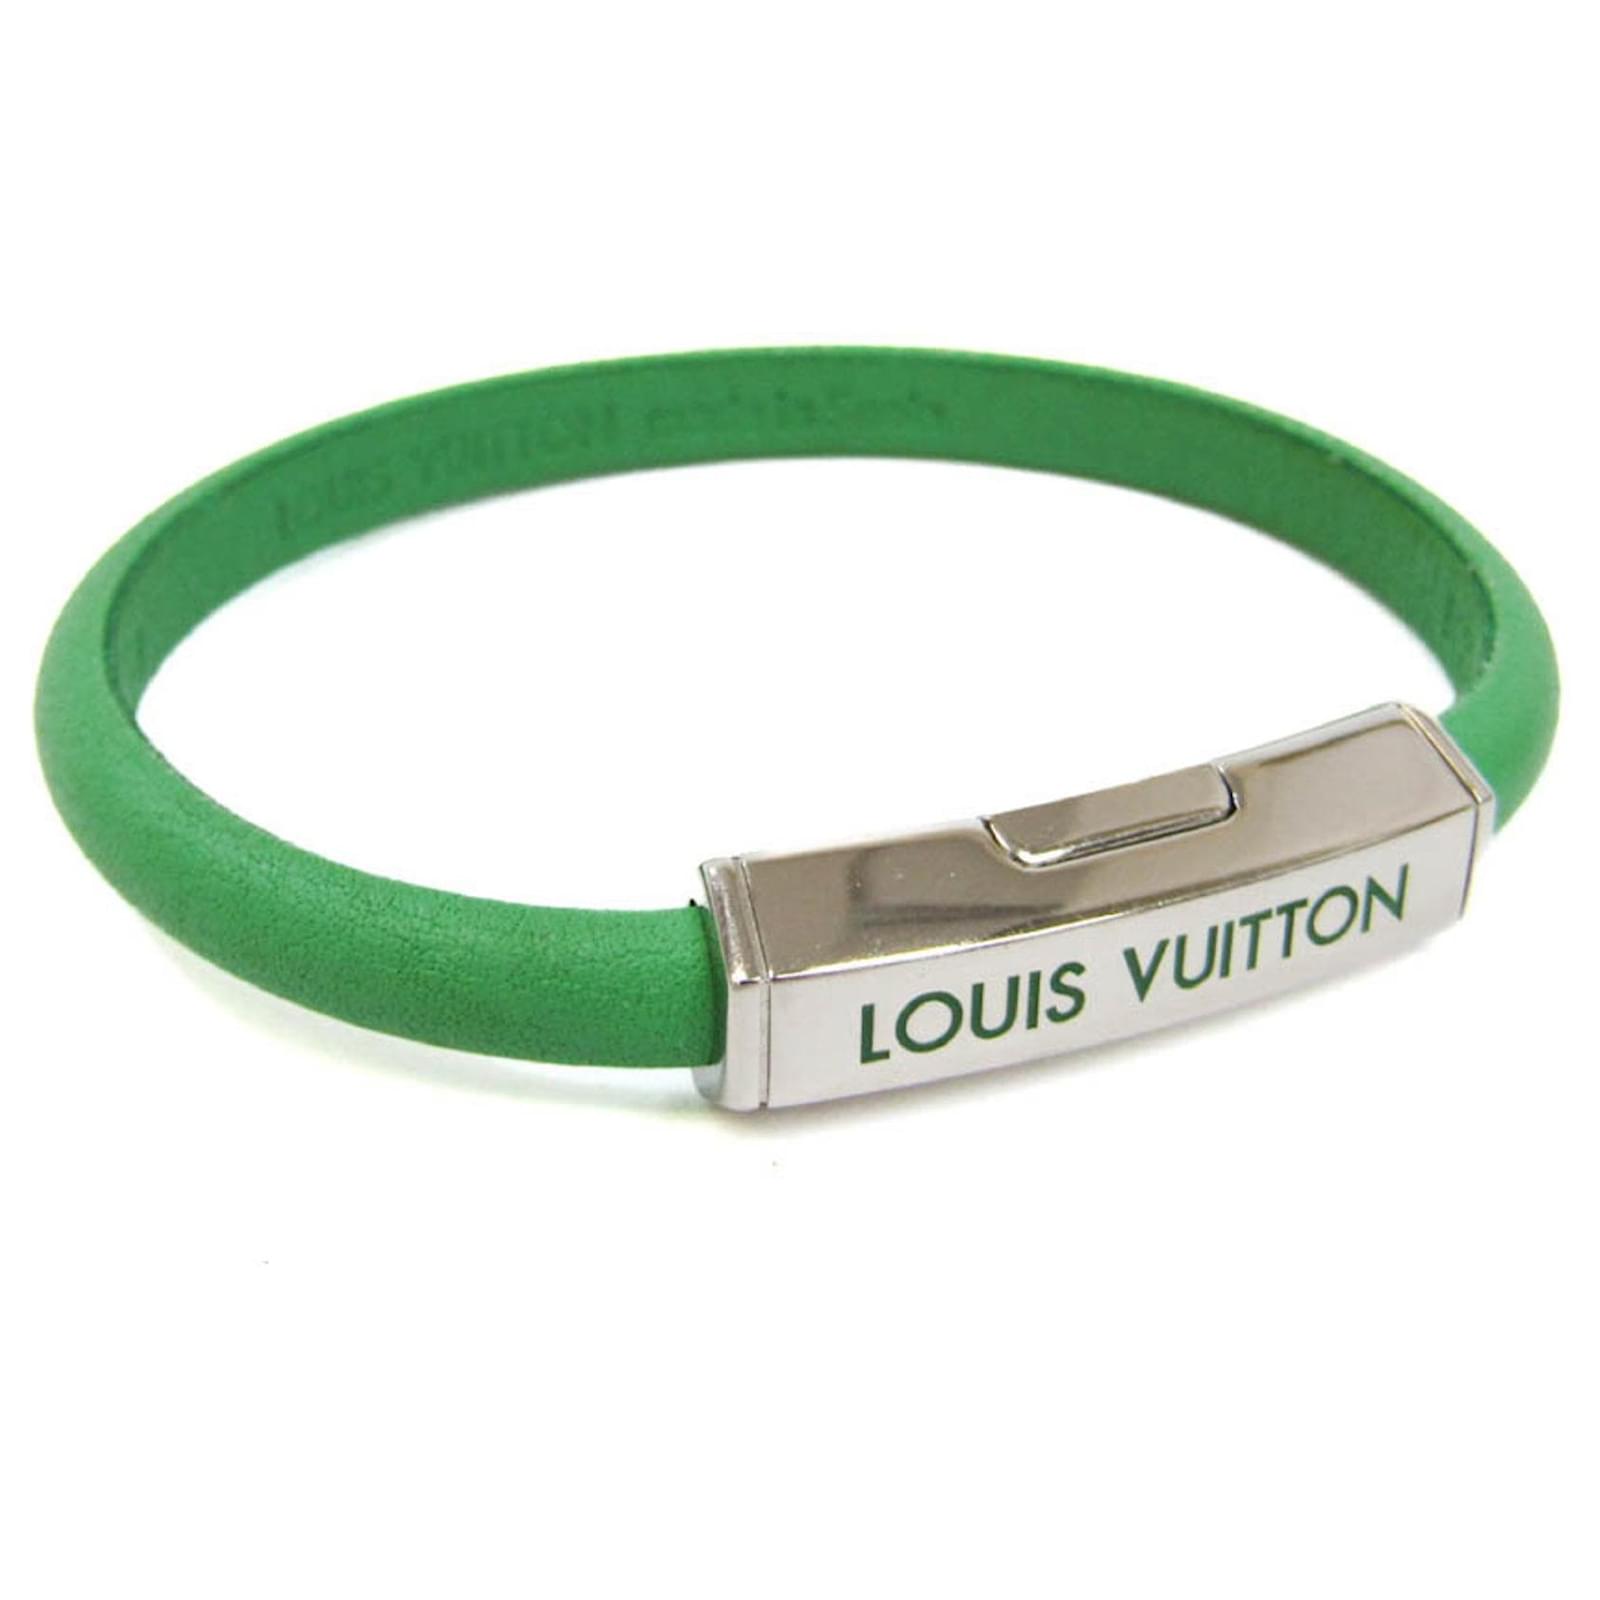 Louis Vuitton Clip It Bracelet Green Leather. Size 19